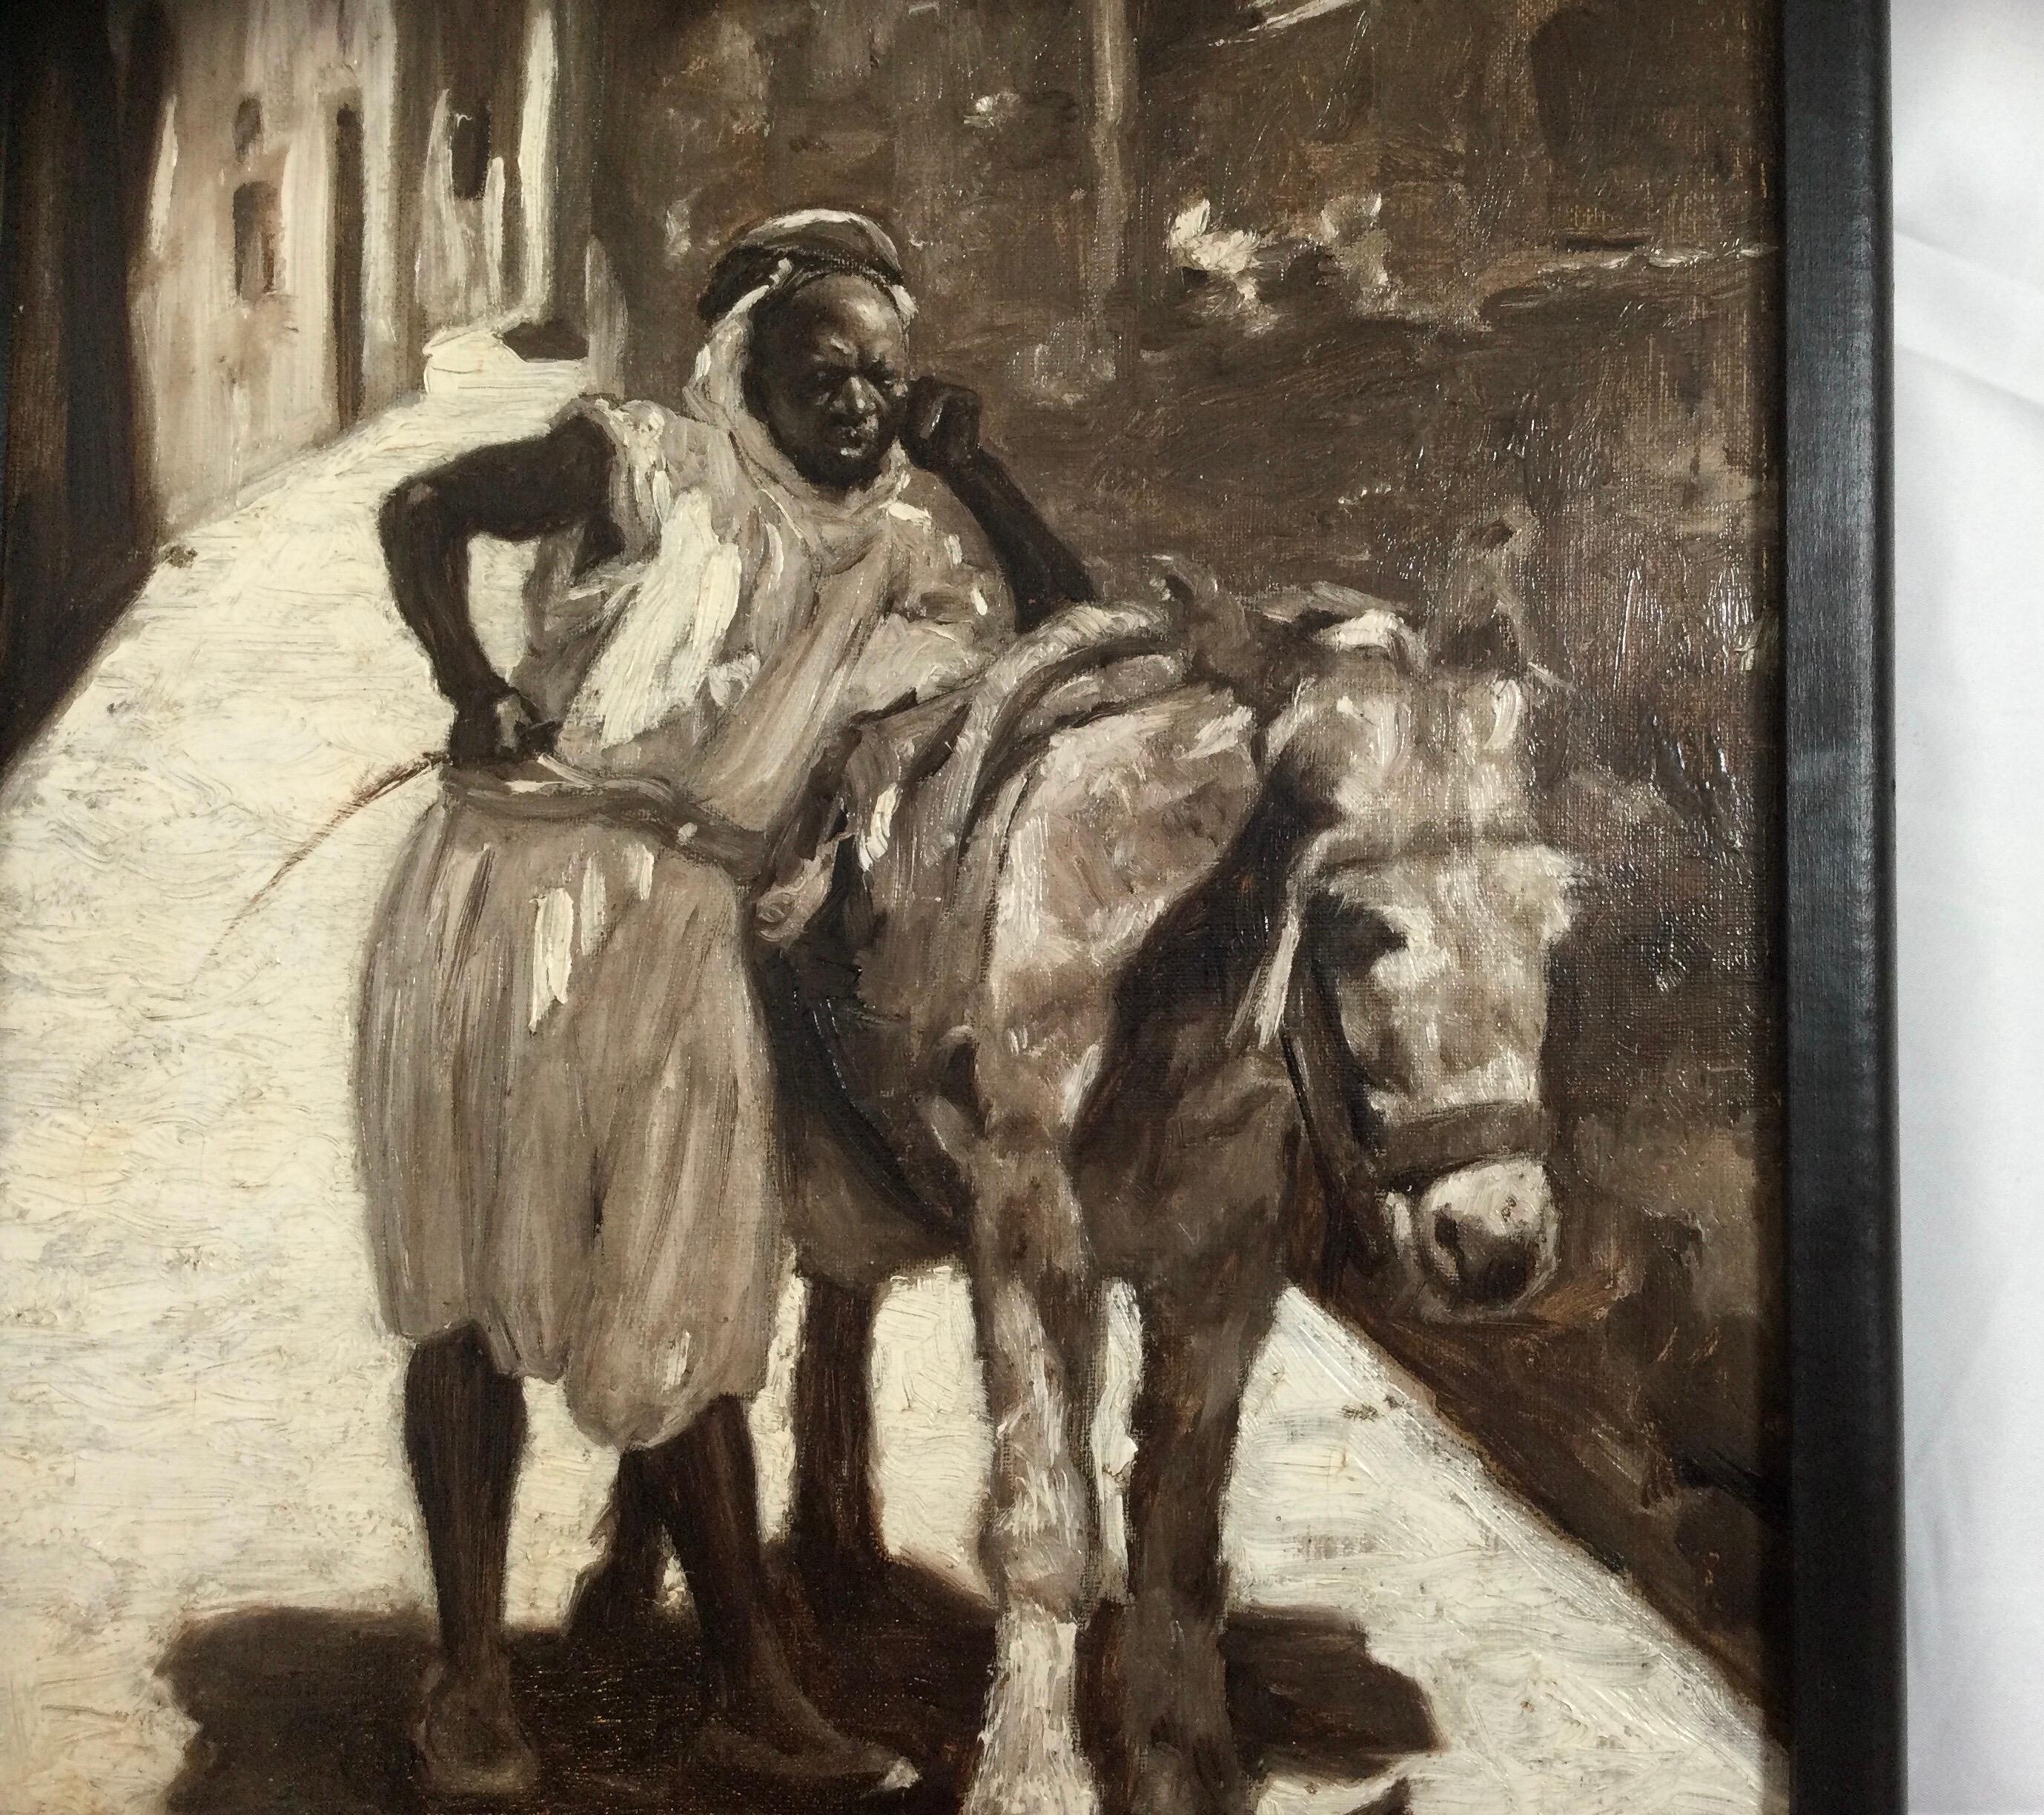 Außergewöhnliches monochromes orientalistisches Werk, das einen Mann darstellt, der sich auf seinen Esel in einer Gasse stützt. Trotz der impressionistischen Pinselstriche wirkt das Gesicht des Mannes fast fotorealistisch. Signiert unten links von